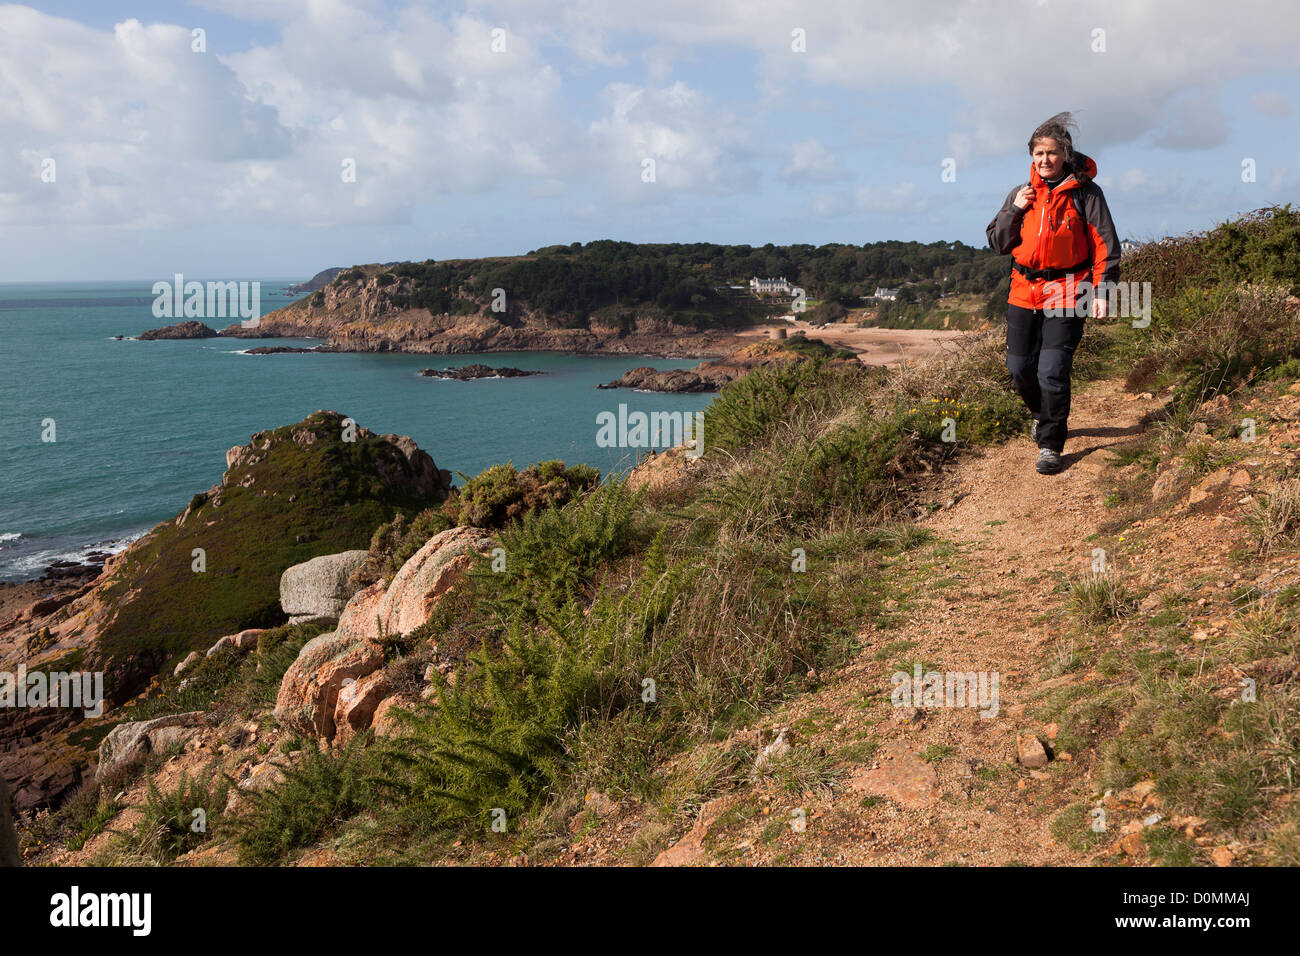 La donna gli escursionisti a piedi sulla costa percorso, Noir Mont, Jersey, Isole del Canale, REGNO UNITO Foto Stock